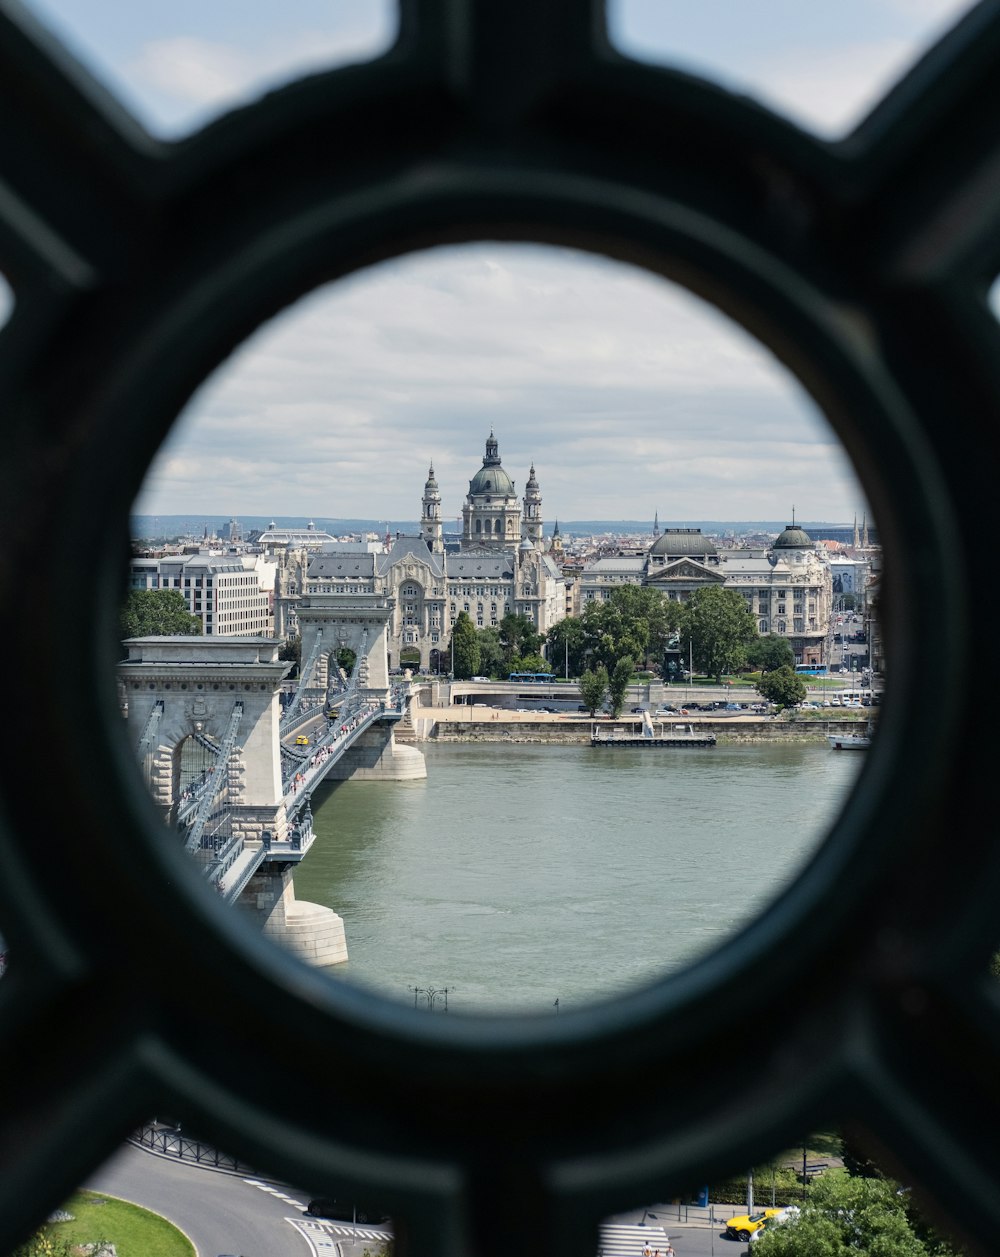 a view of a bridge through a circular window